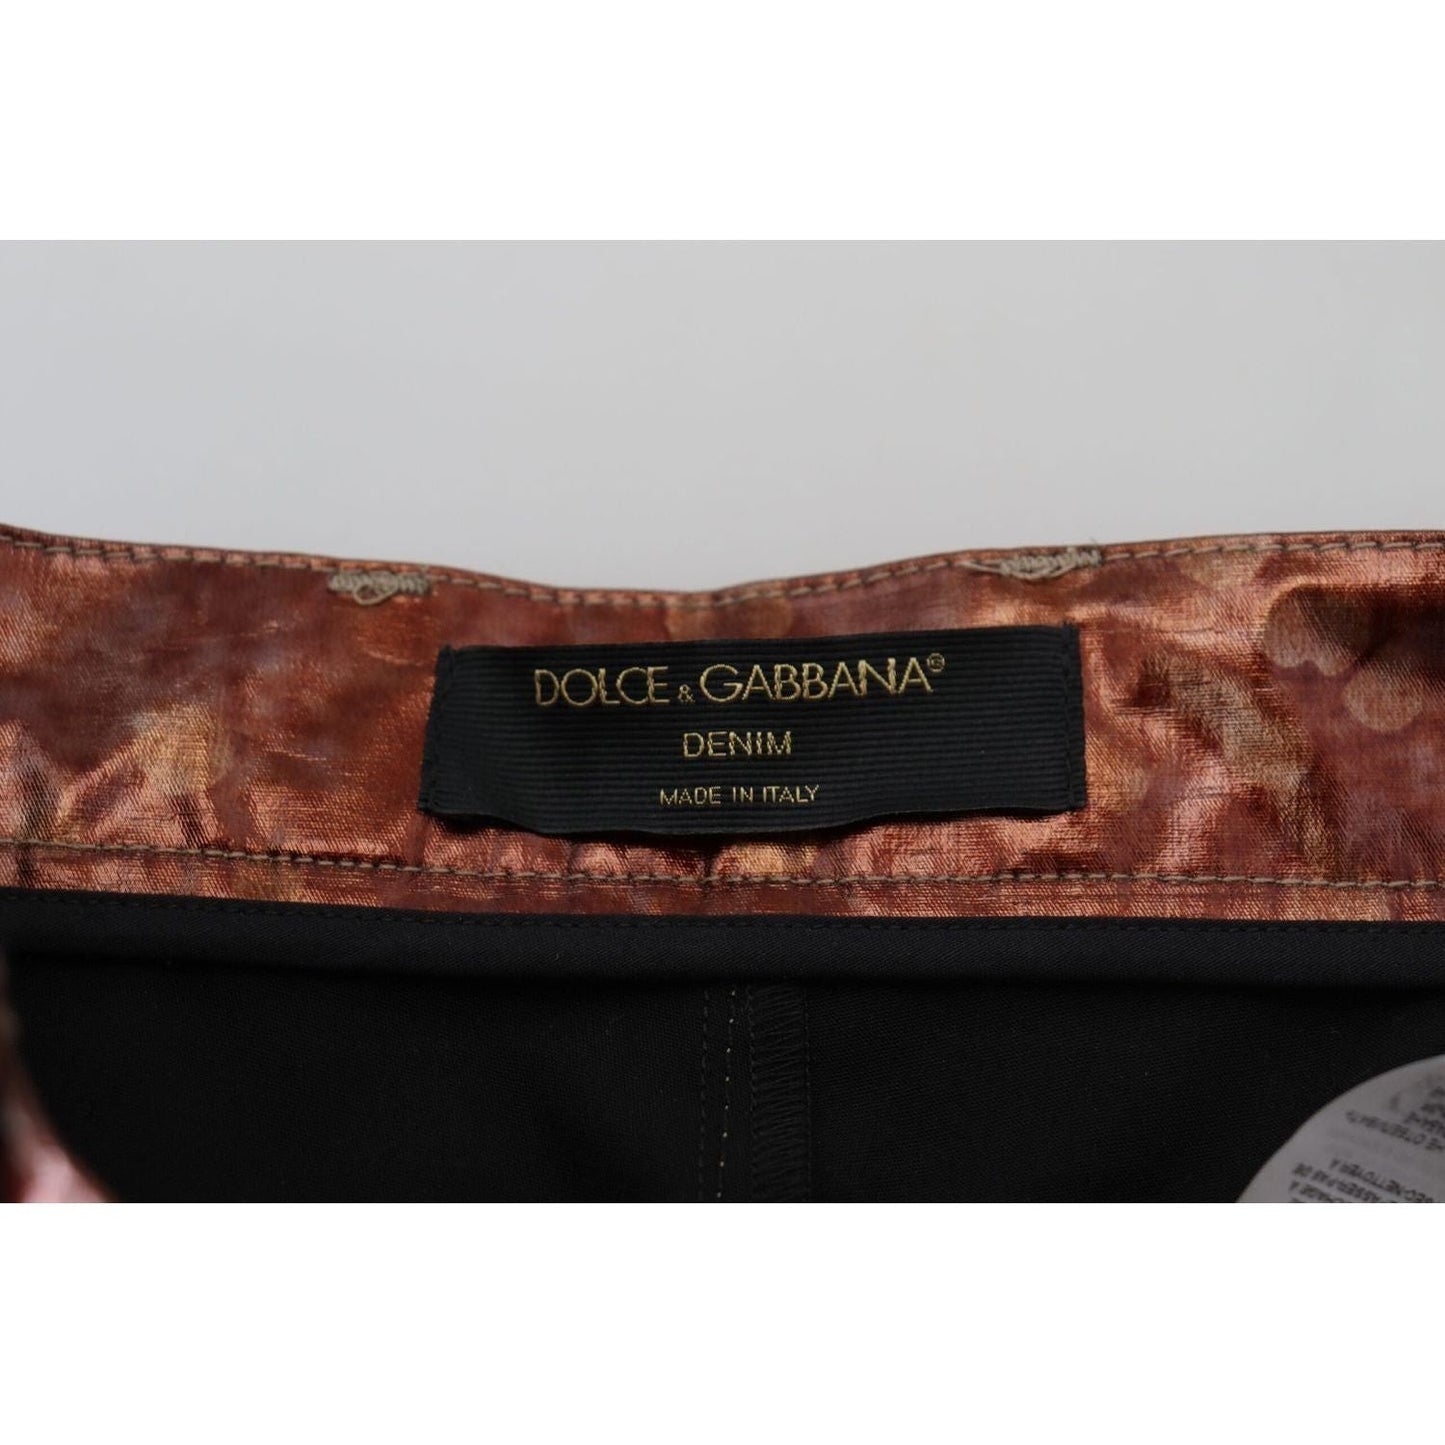 Dolce & Gabbana High Waist Skinny Jeans in Metallic Bronze metallic-bronze-high-waist-skinny-jeans IMG_9568-scaled-b0e8356e-80b.jpg